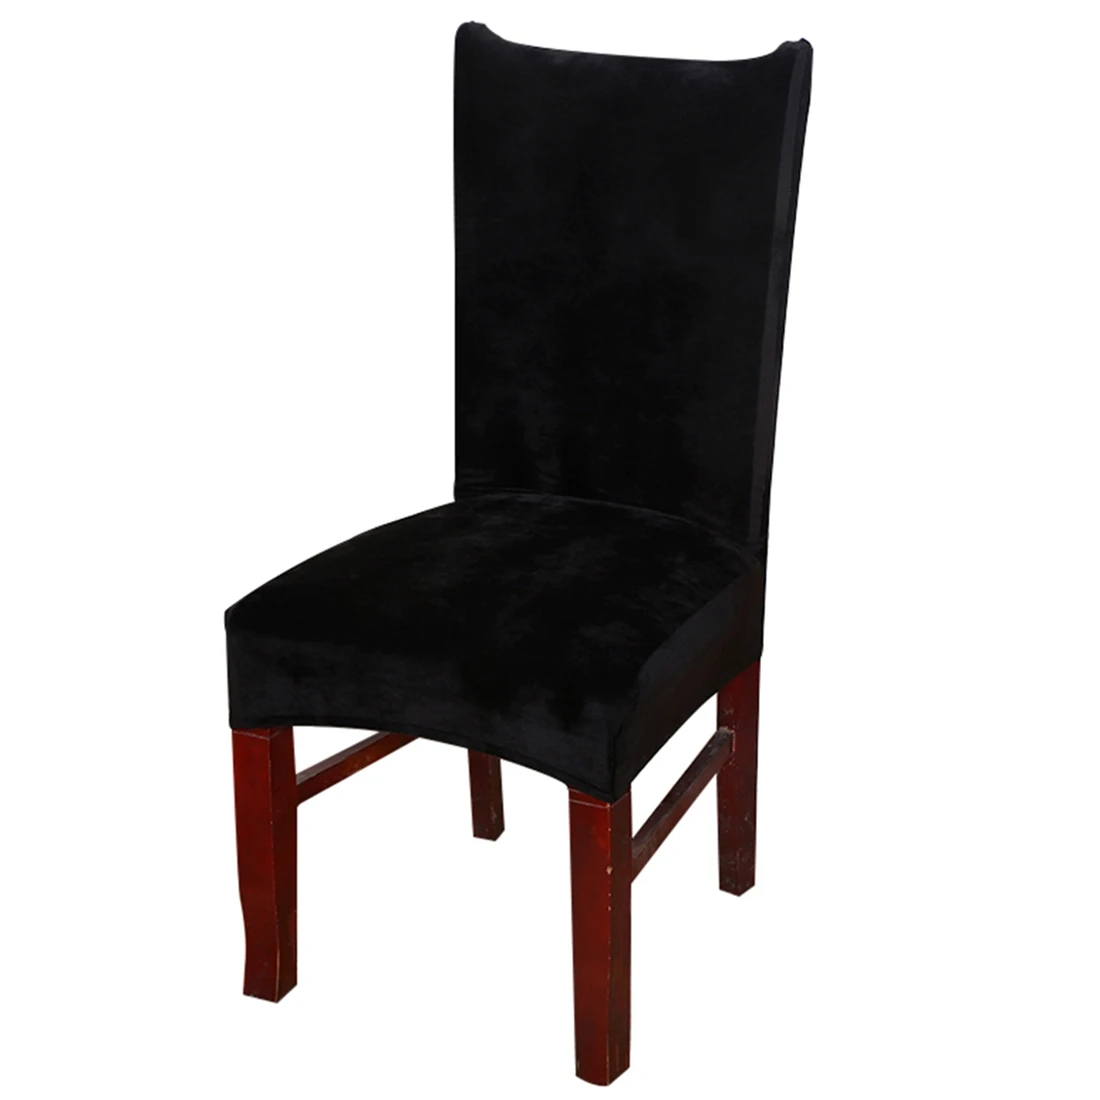 2 шт./лот чехлы на кресла стрейч для столовой протектор утолщенный съемный чехол для стула чехол для сиденья для дома Свадебные товары для стула - Цвет: Style 9